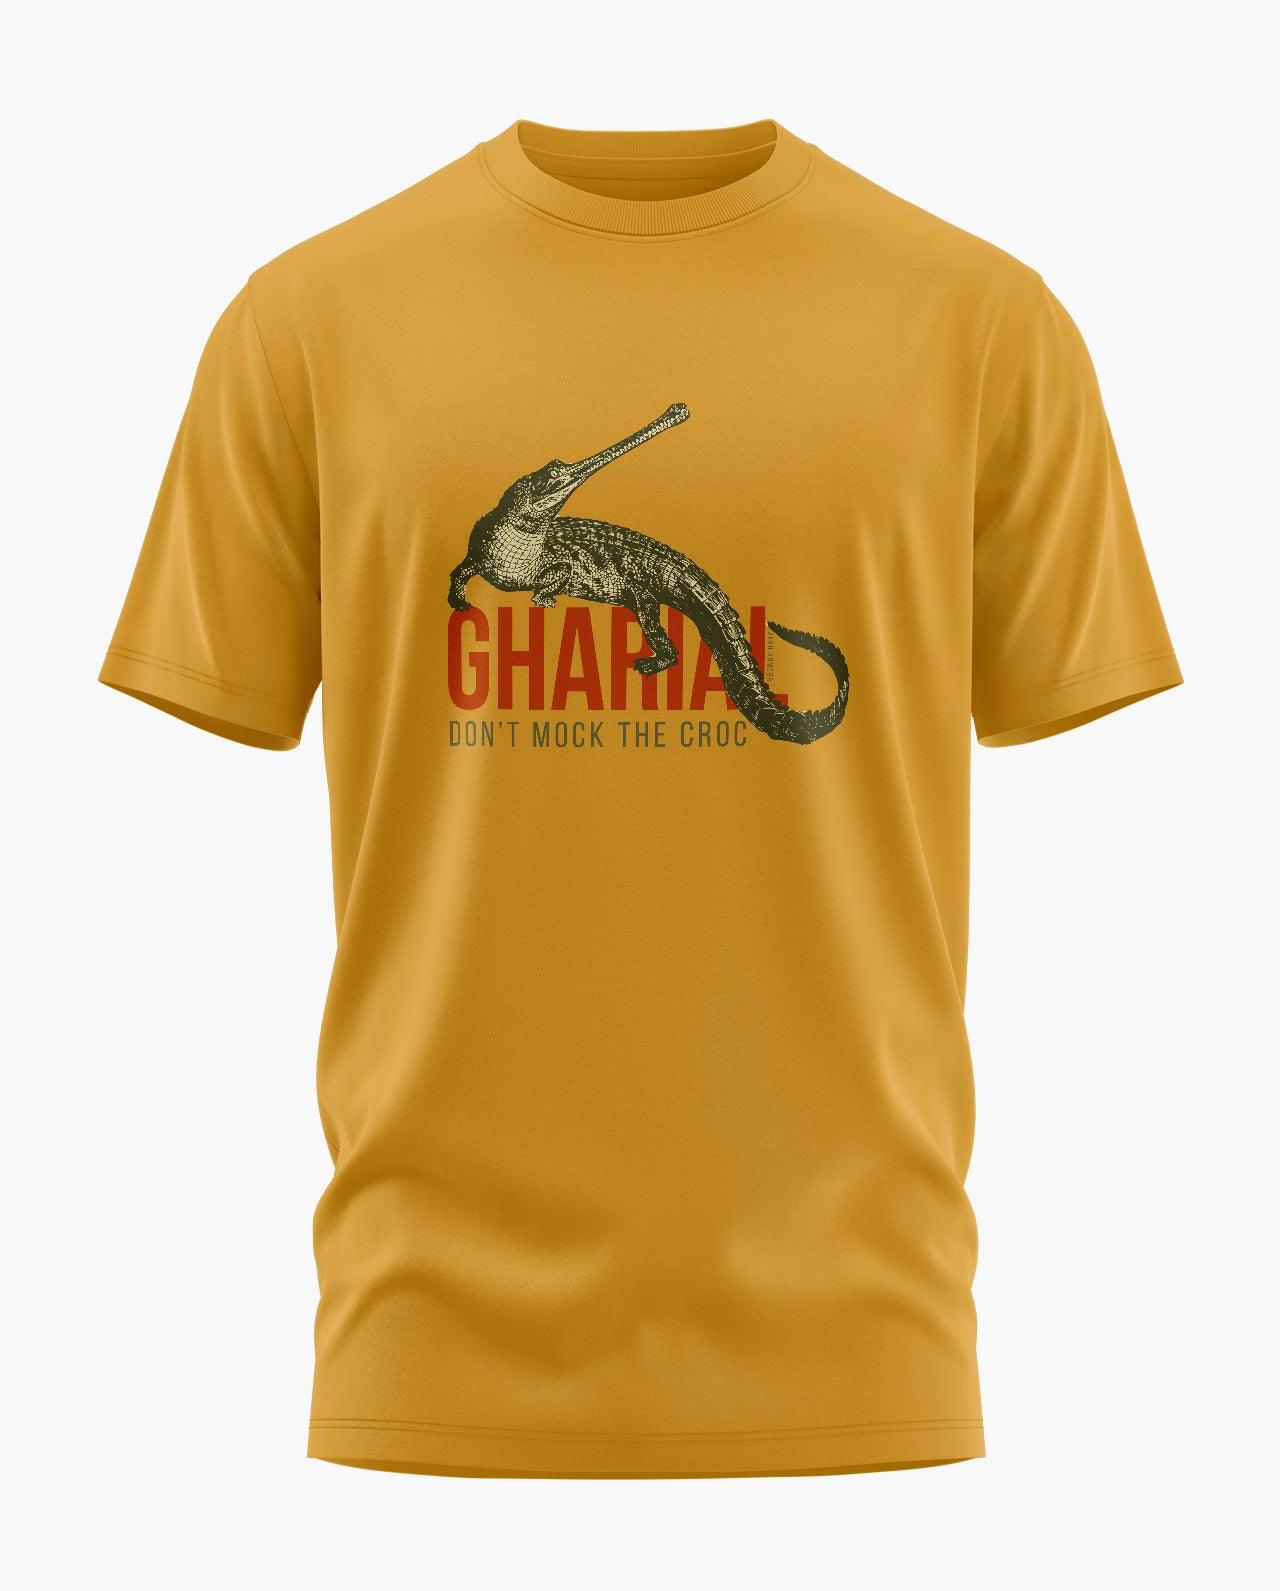 Gharial T-Shirt - Aero Armour